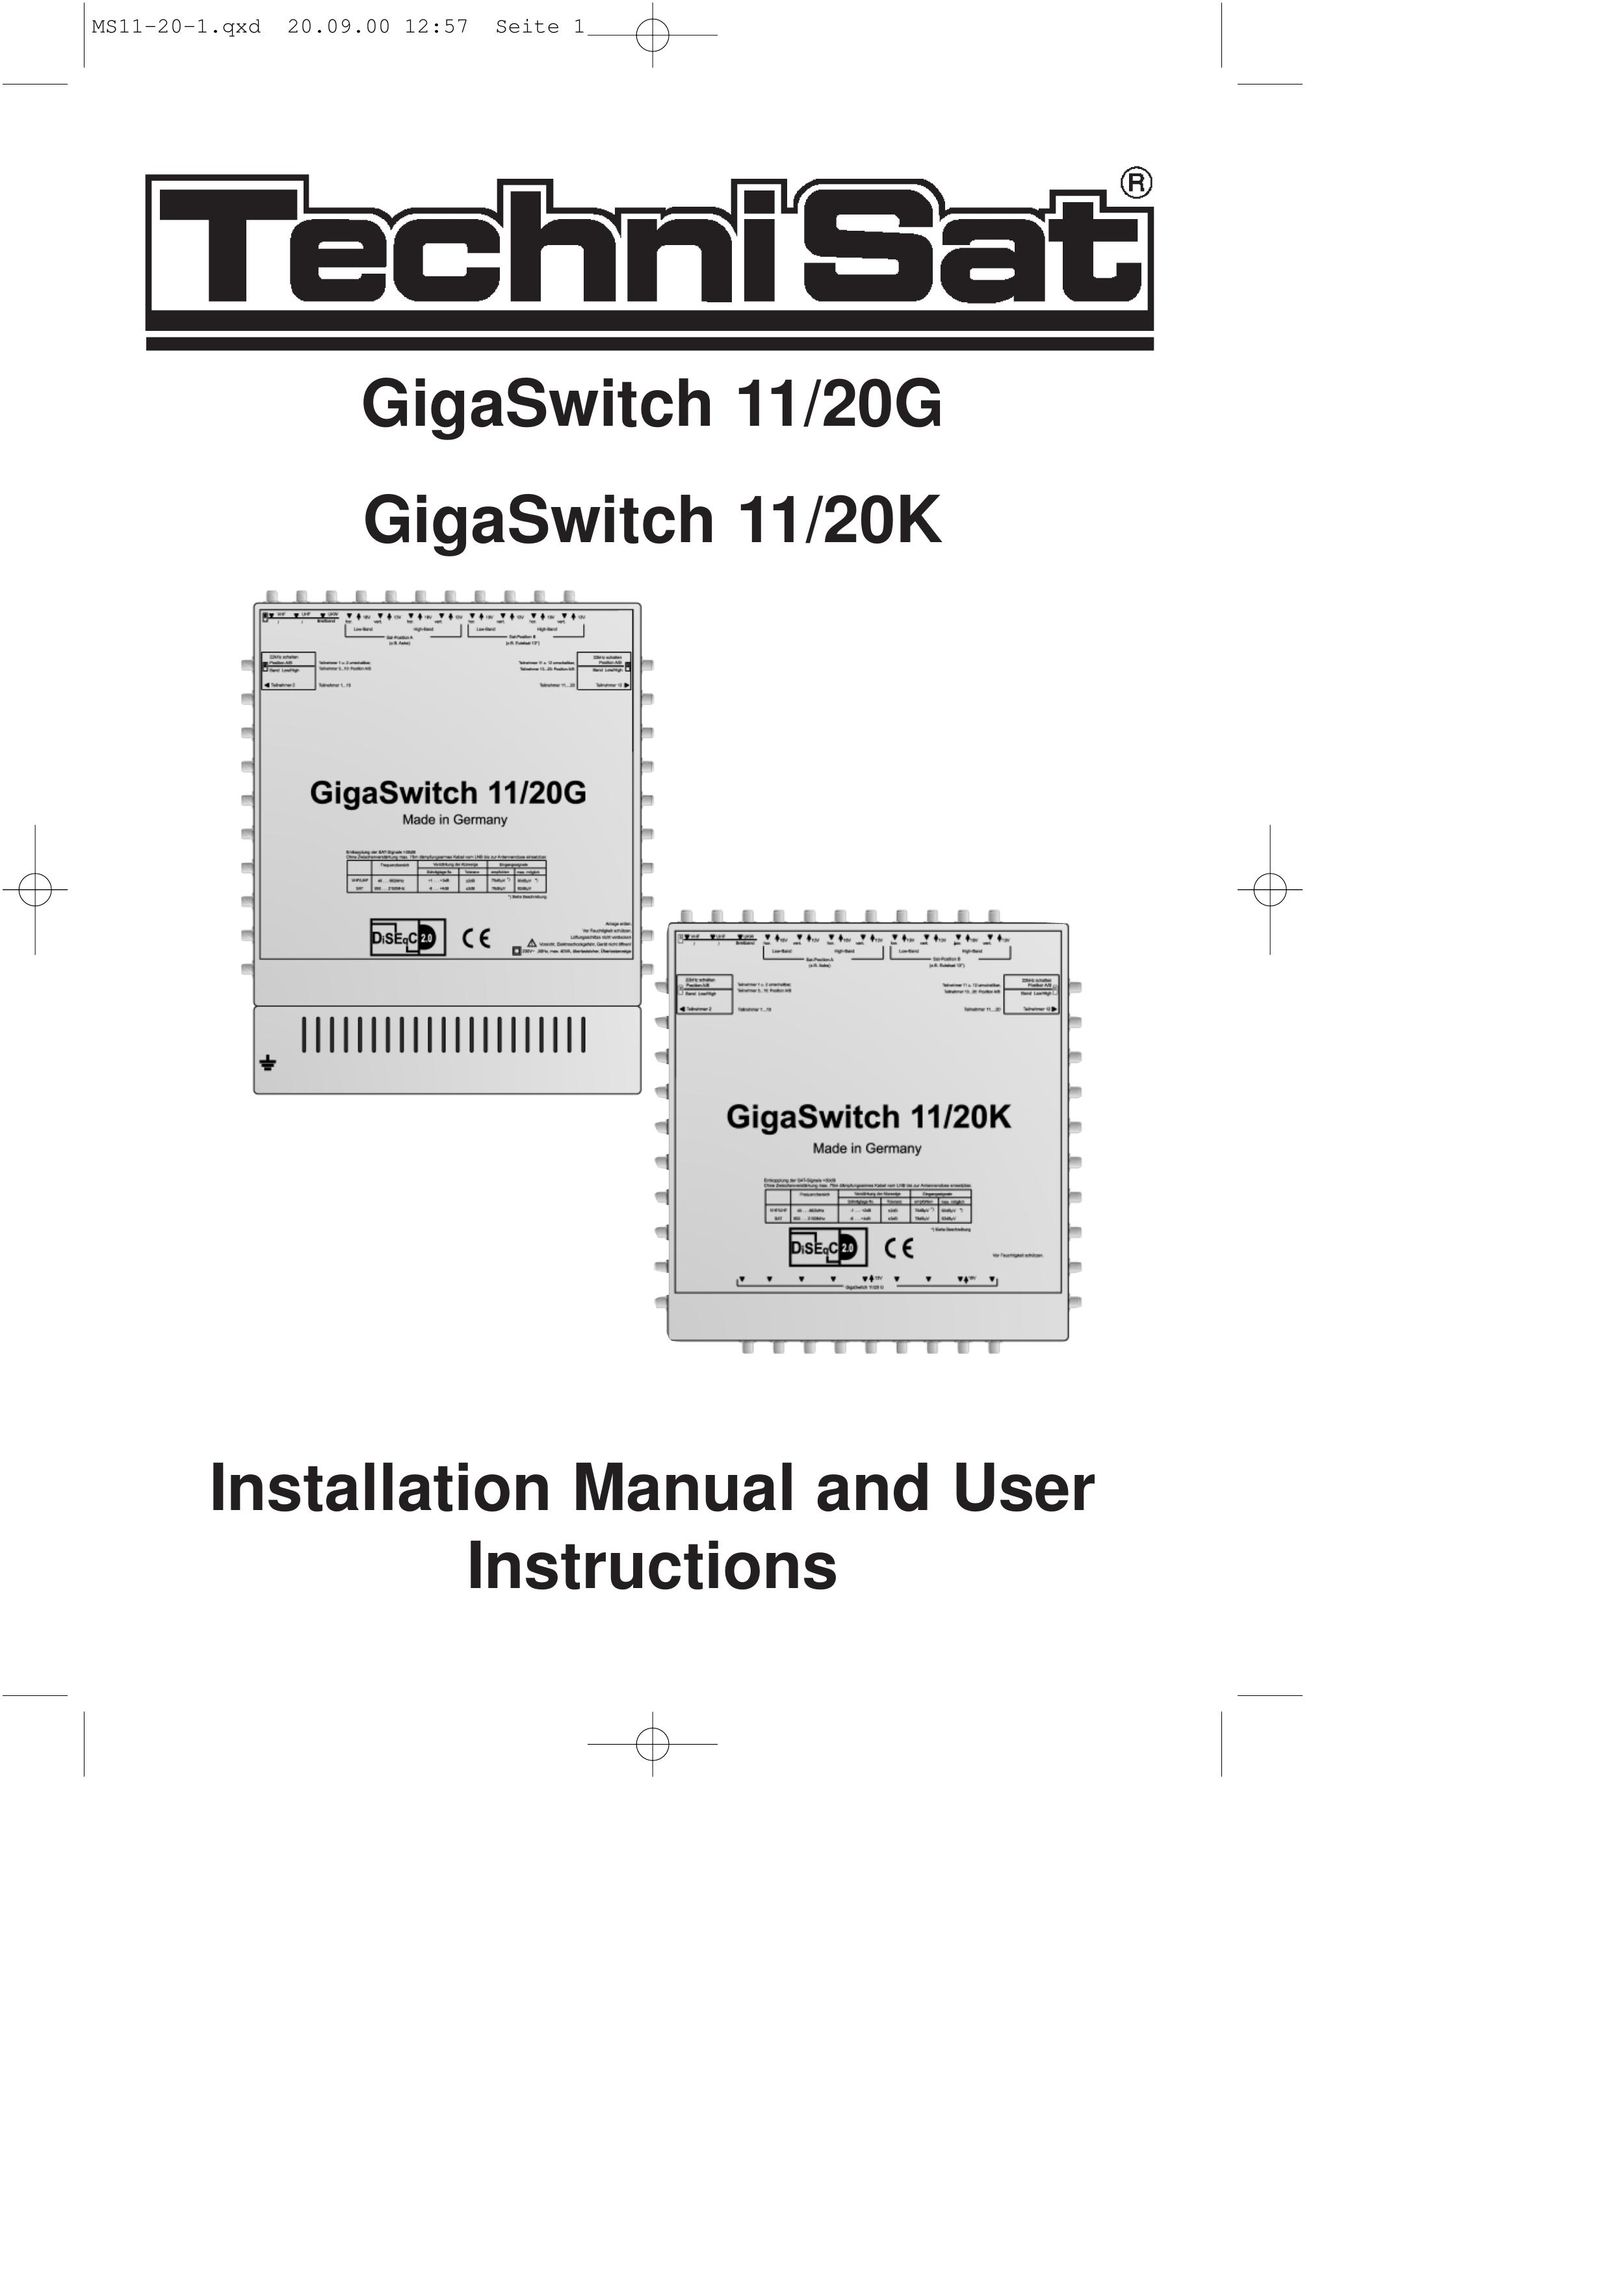 TechniSat 11/20K Switch User Manual